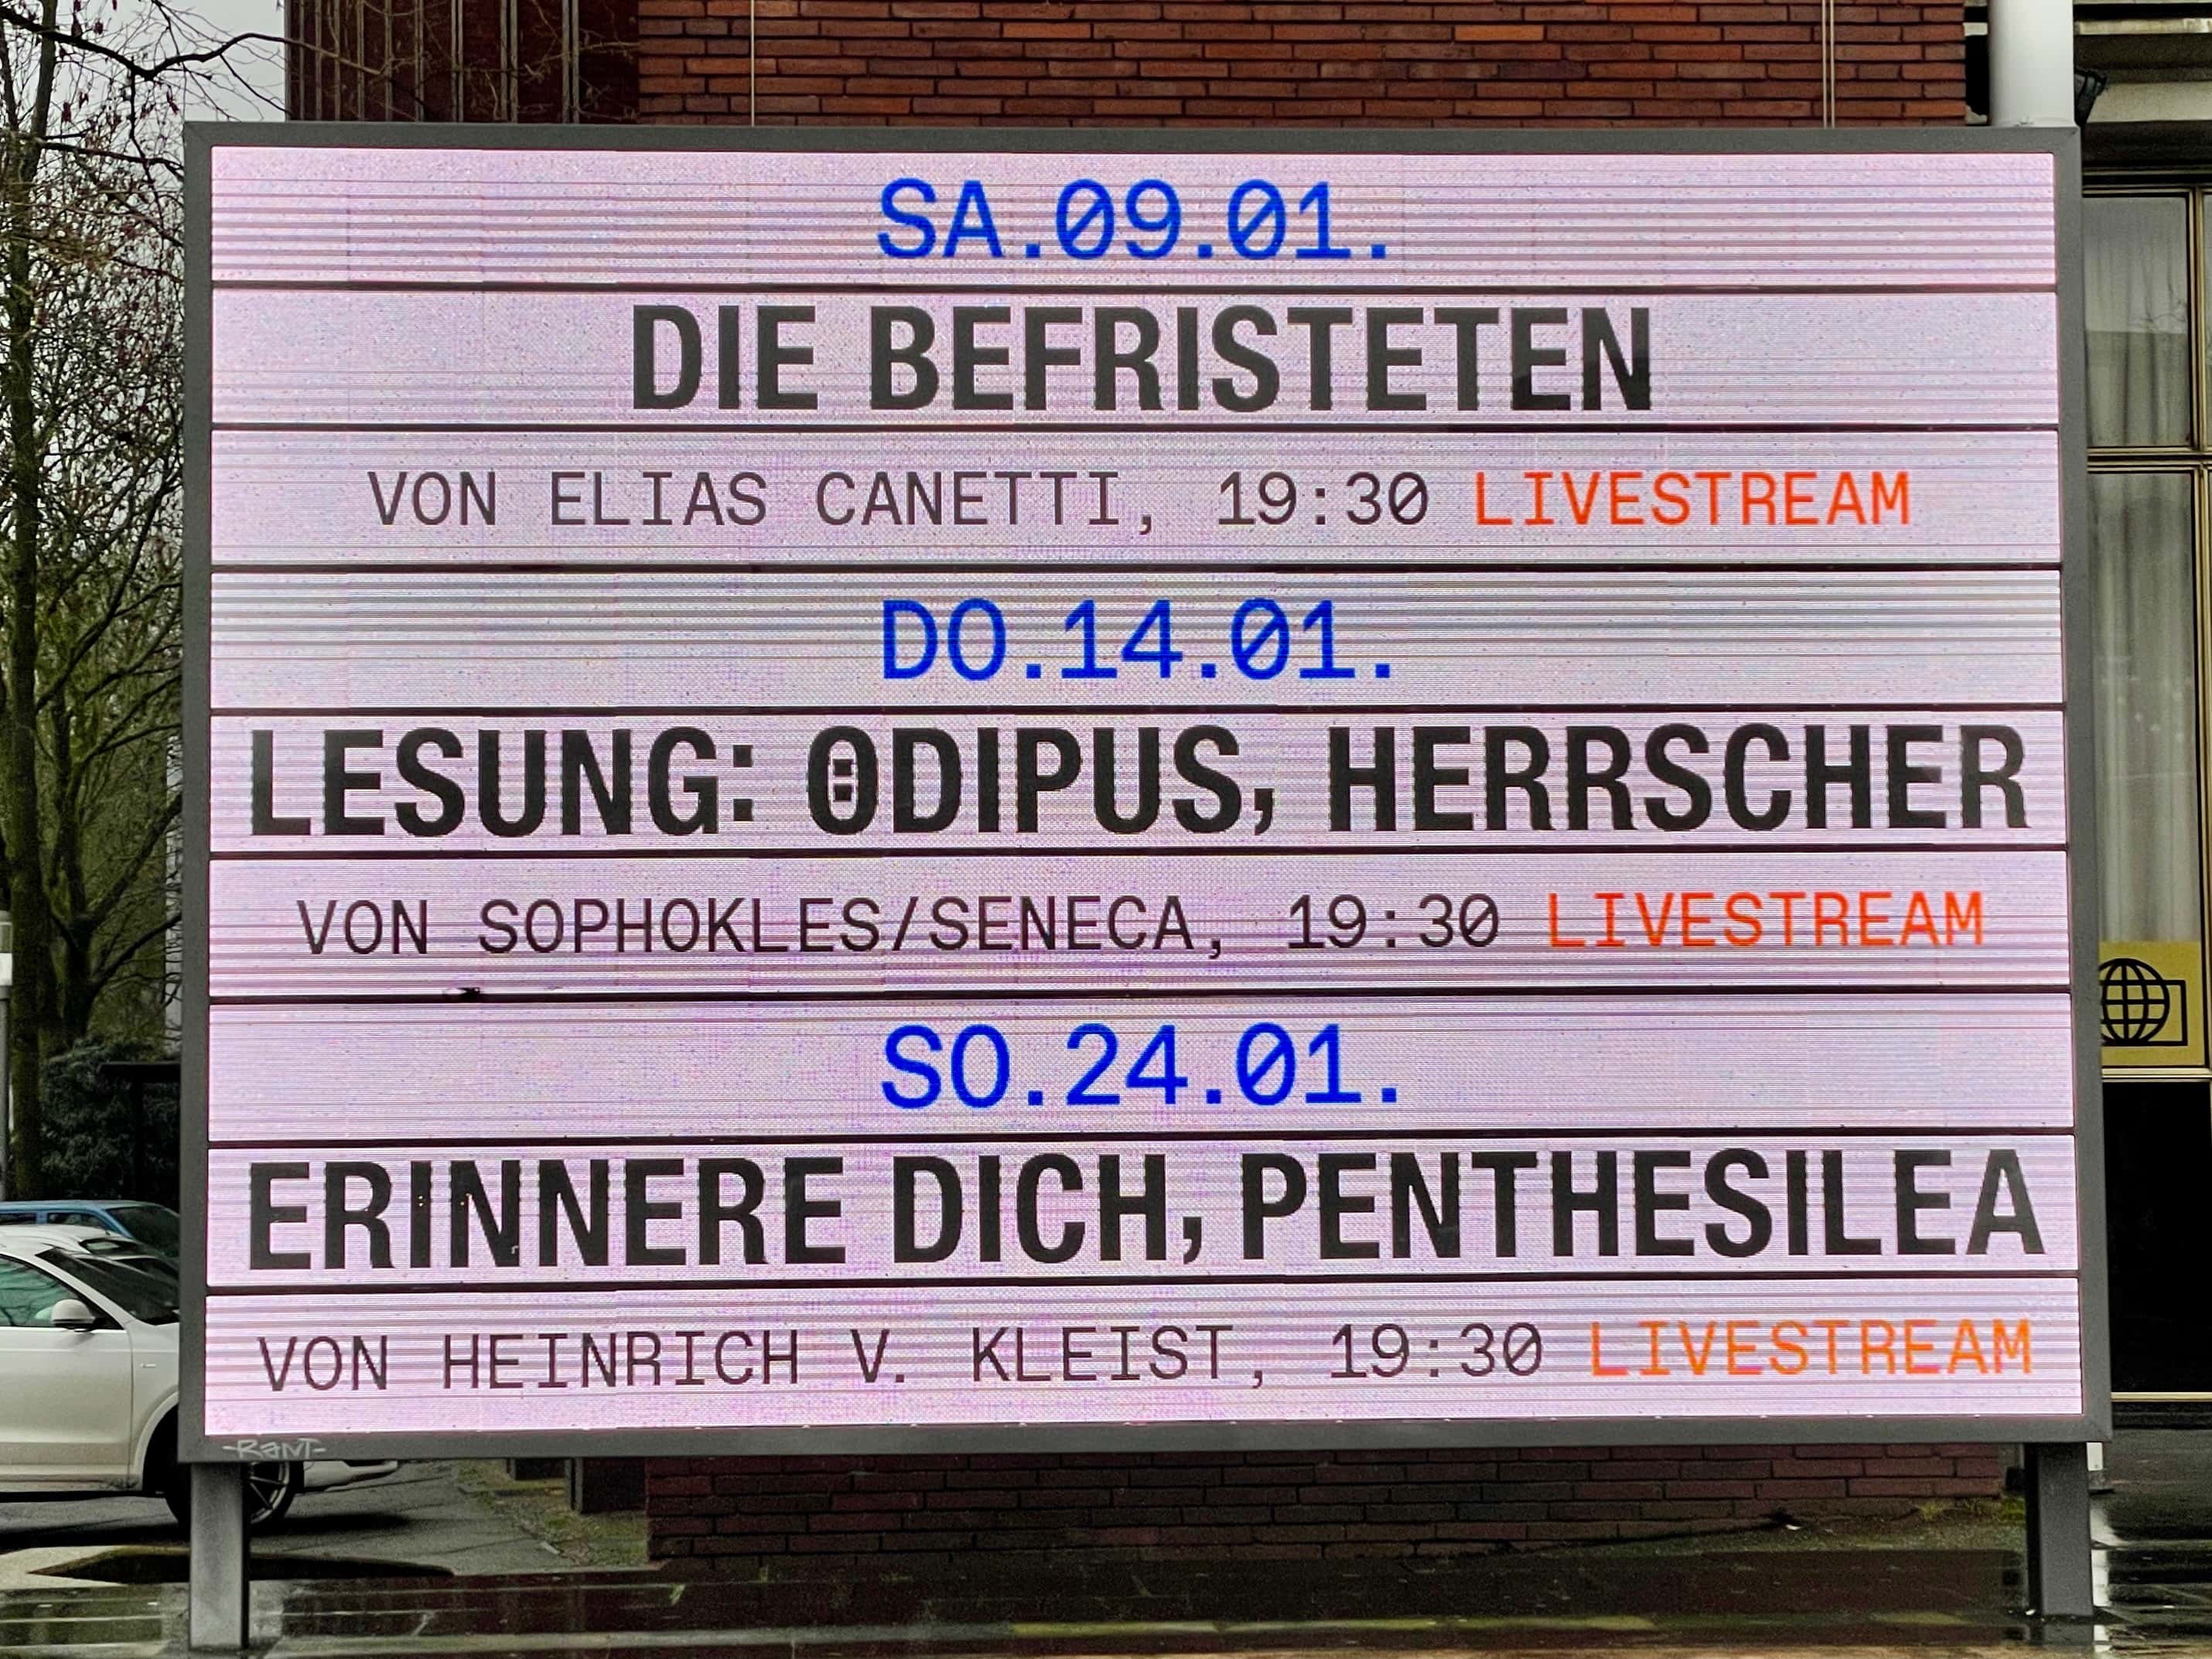 Schauspielhaus Bochum (Programmtafel, aufgenommen am 09.01.2021)